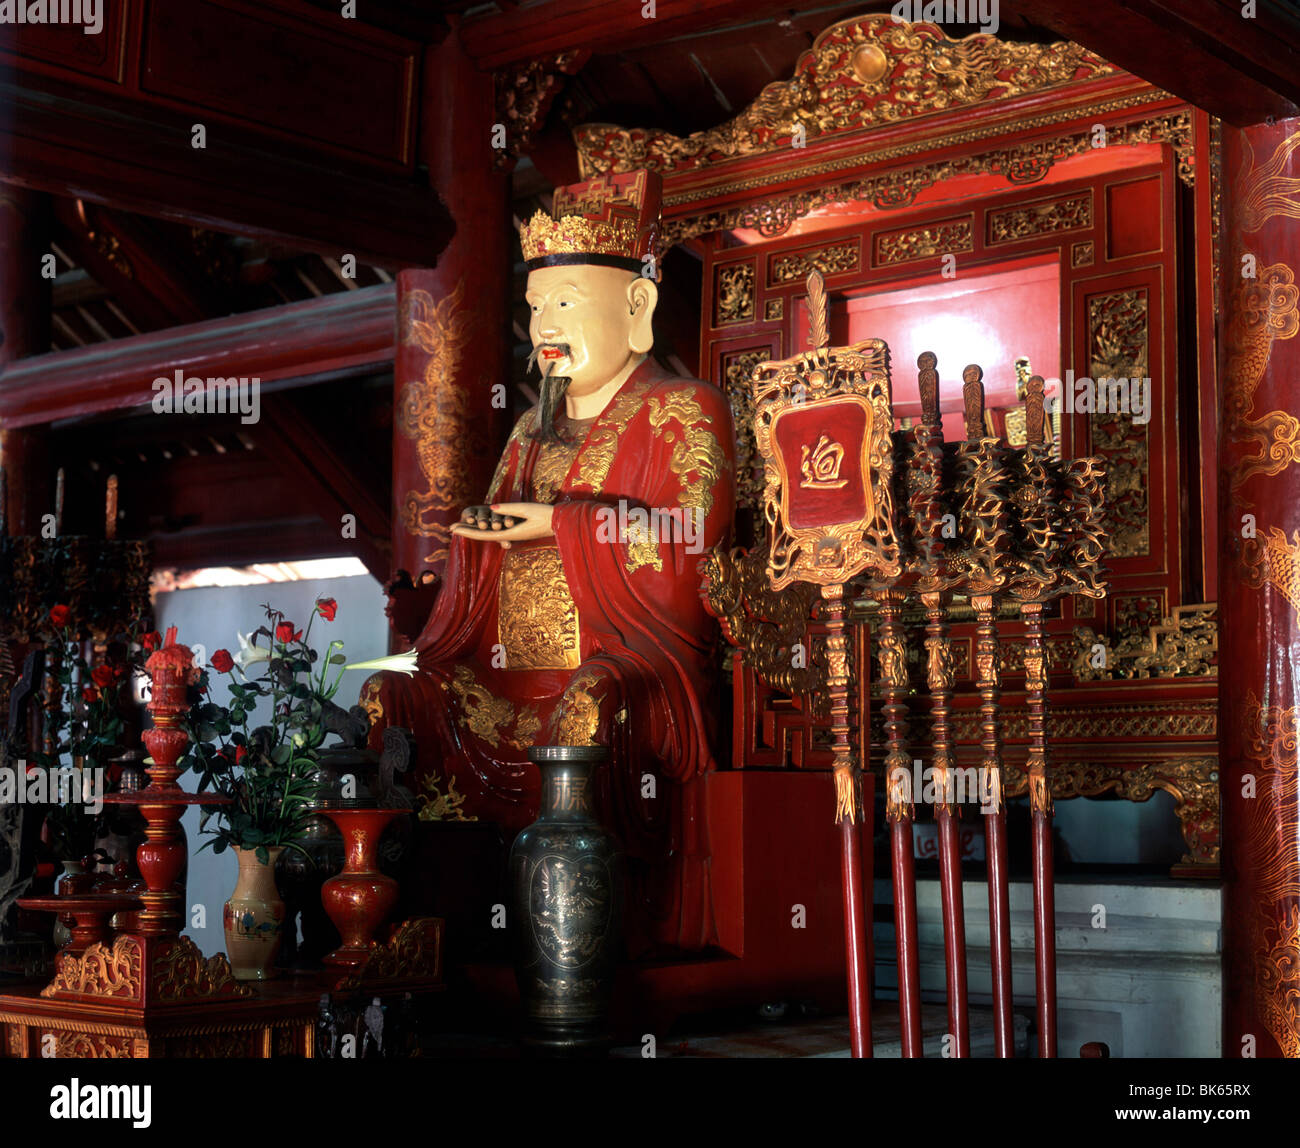 Statua di Confucio, Tempio della Letteratura, Hanoi, Vietnam, Indocina, Asia sud-orientale, Asia Foto Stock